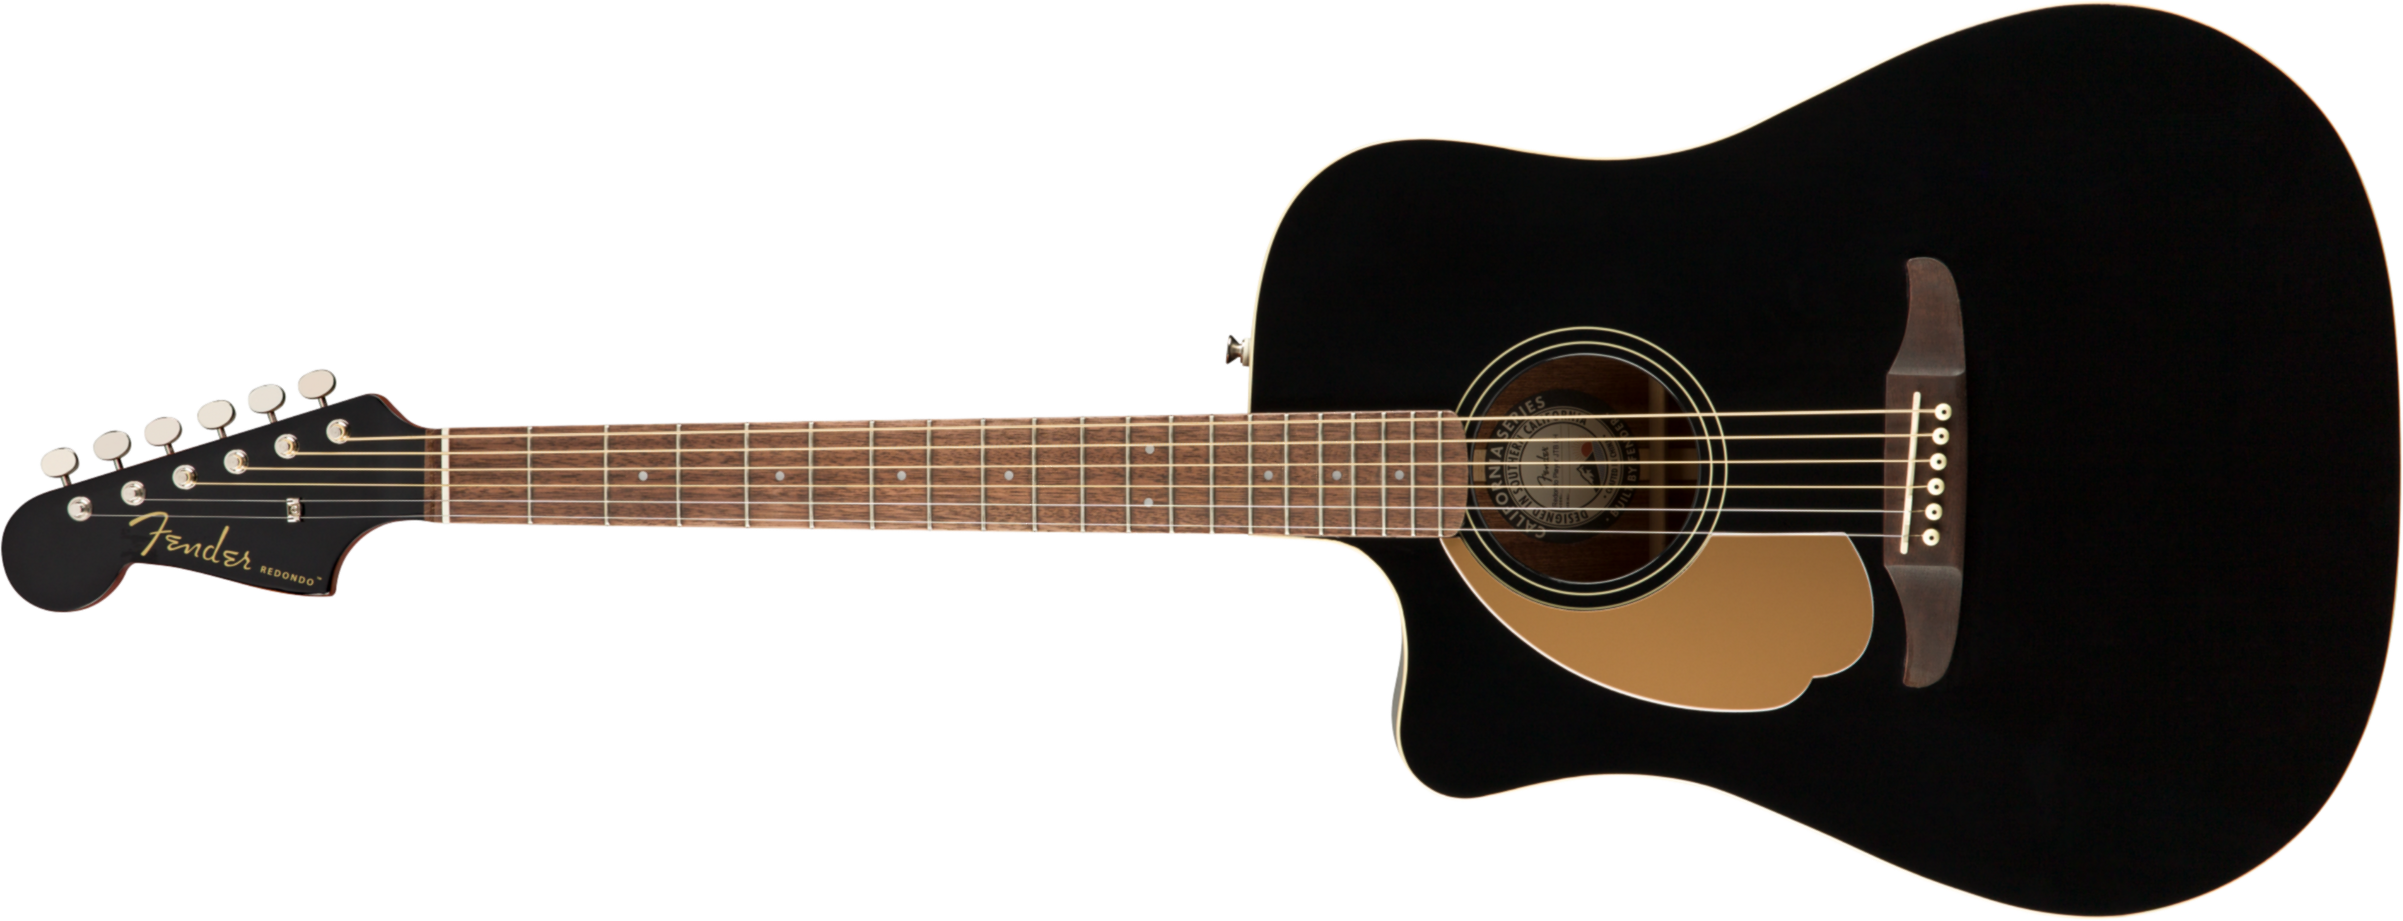 Fender Redondo Lh California Player Gaucher Cw Epicea Acajou Pau - Jetty Black - Elektroakustische Gitarre - Main picture